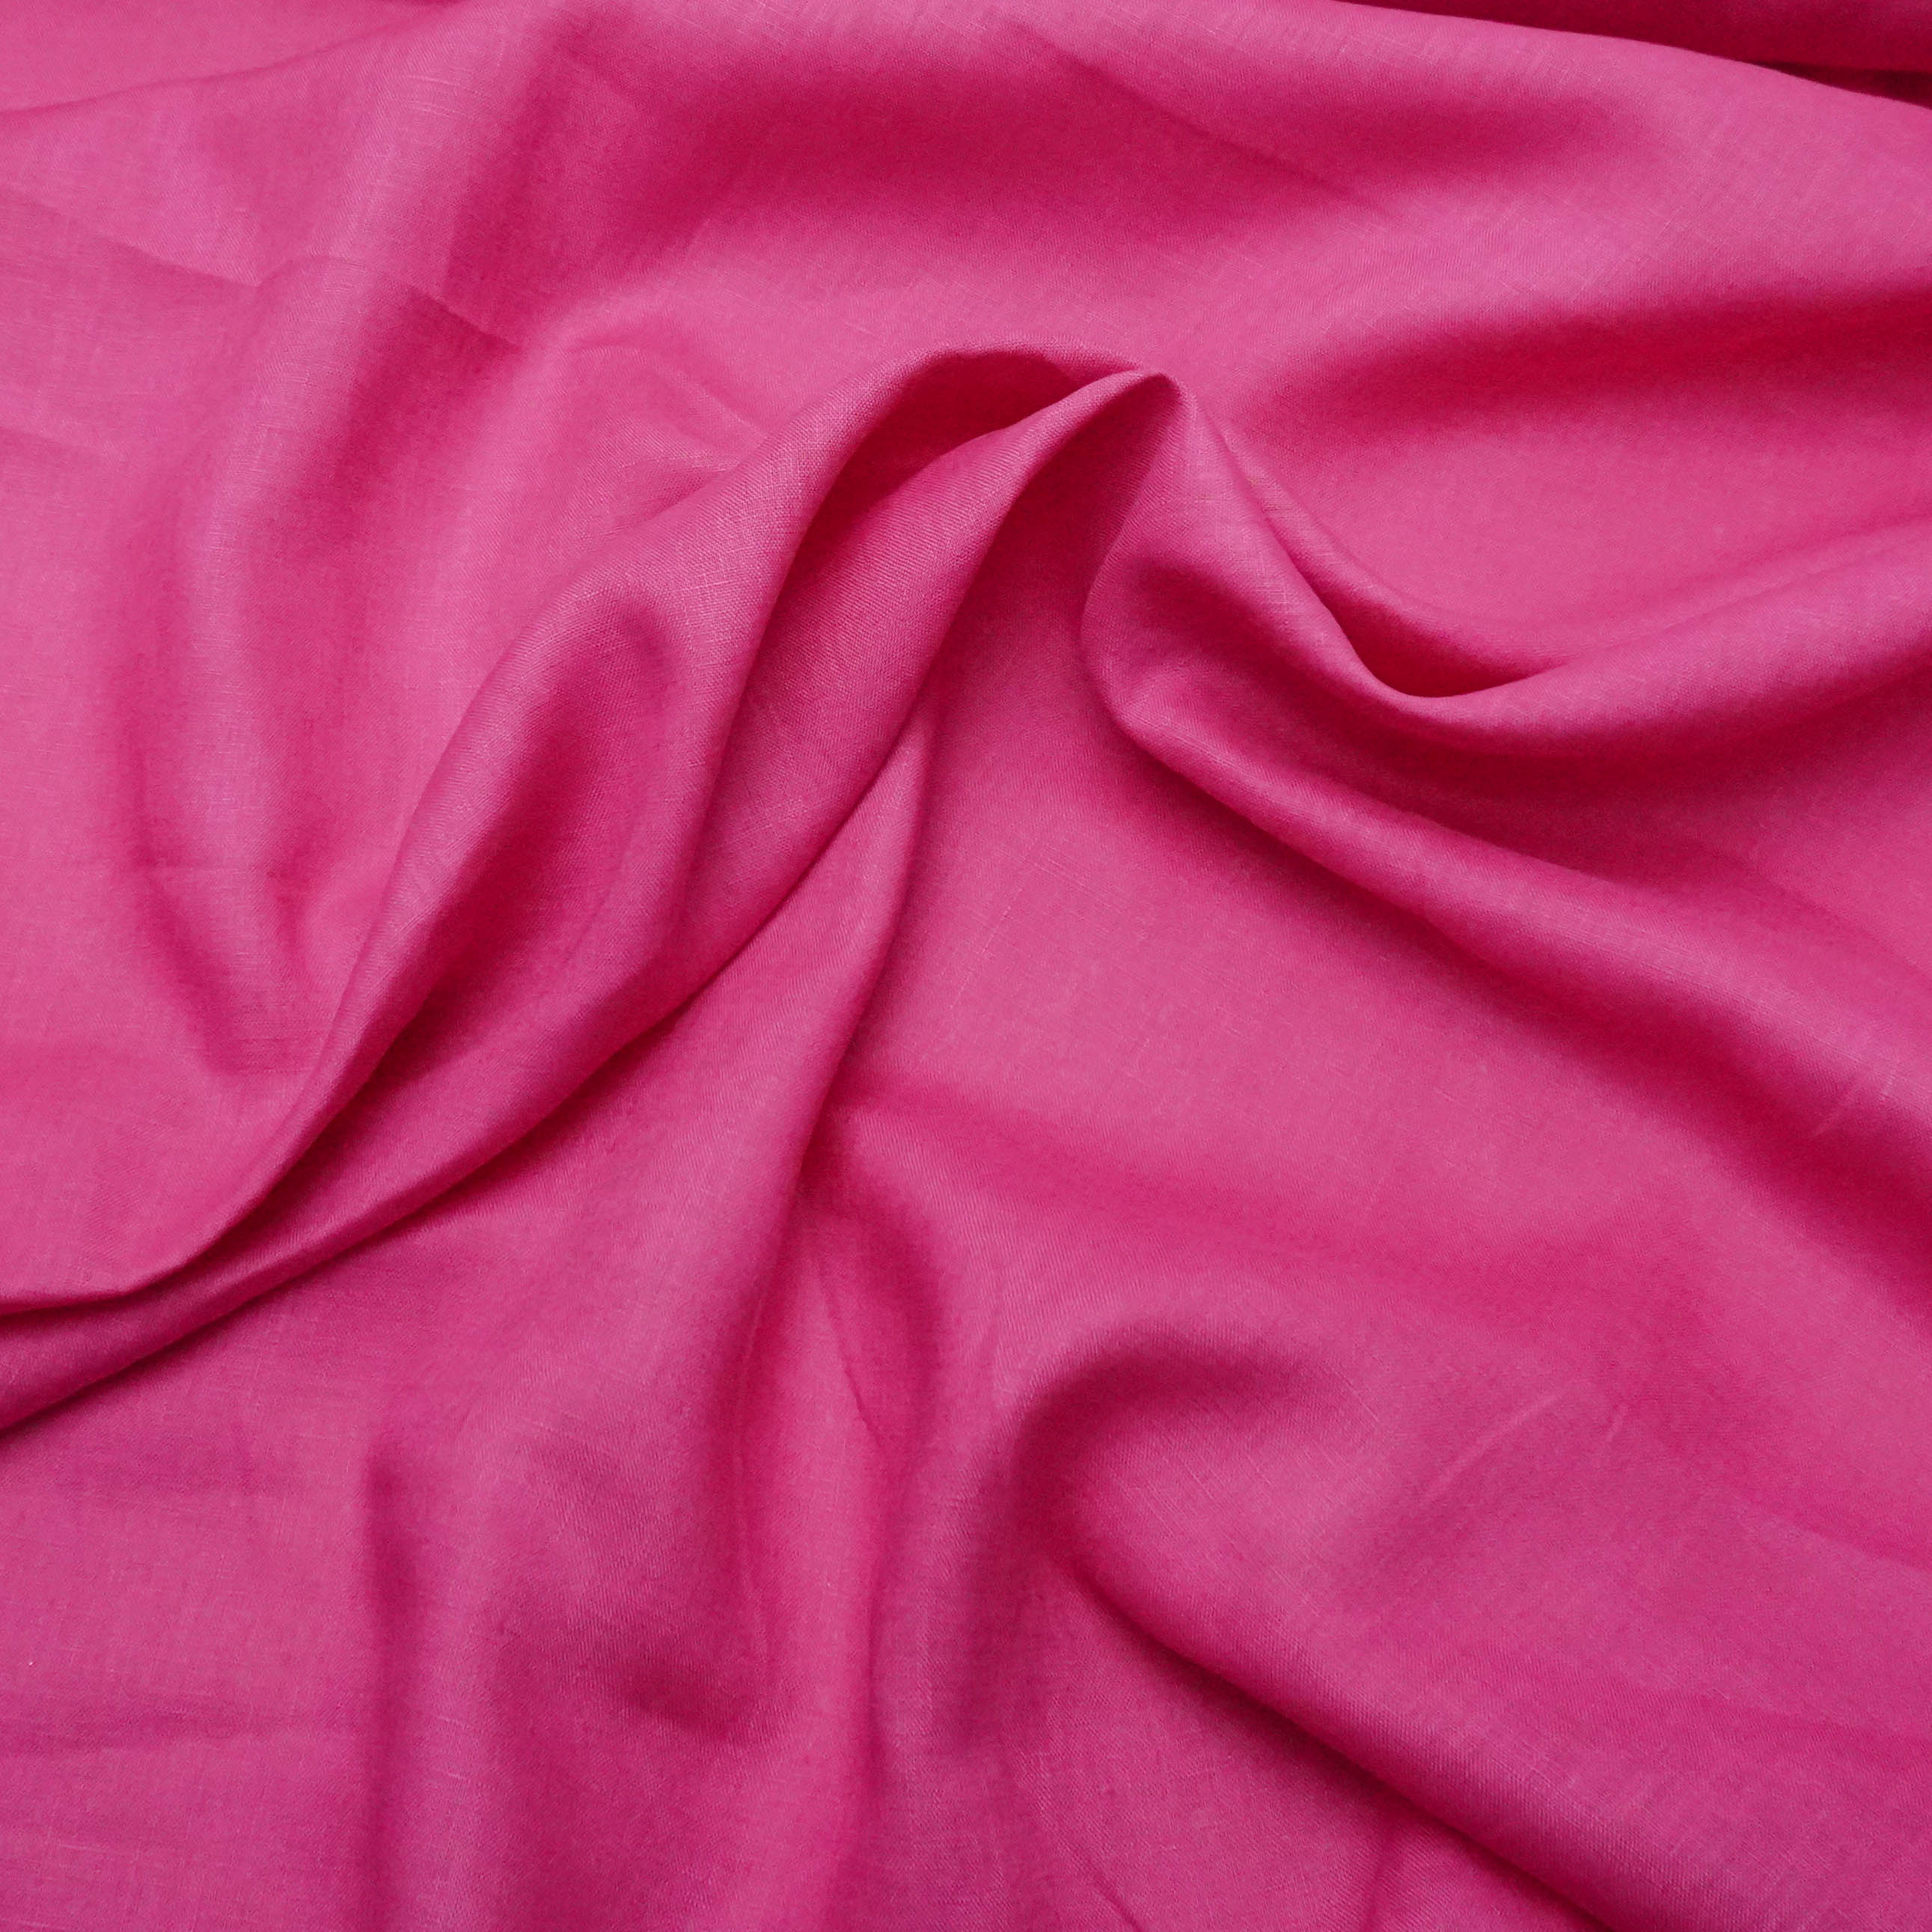 Tecido linho puro pink 100% linho